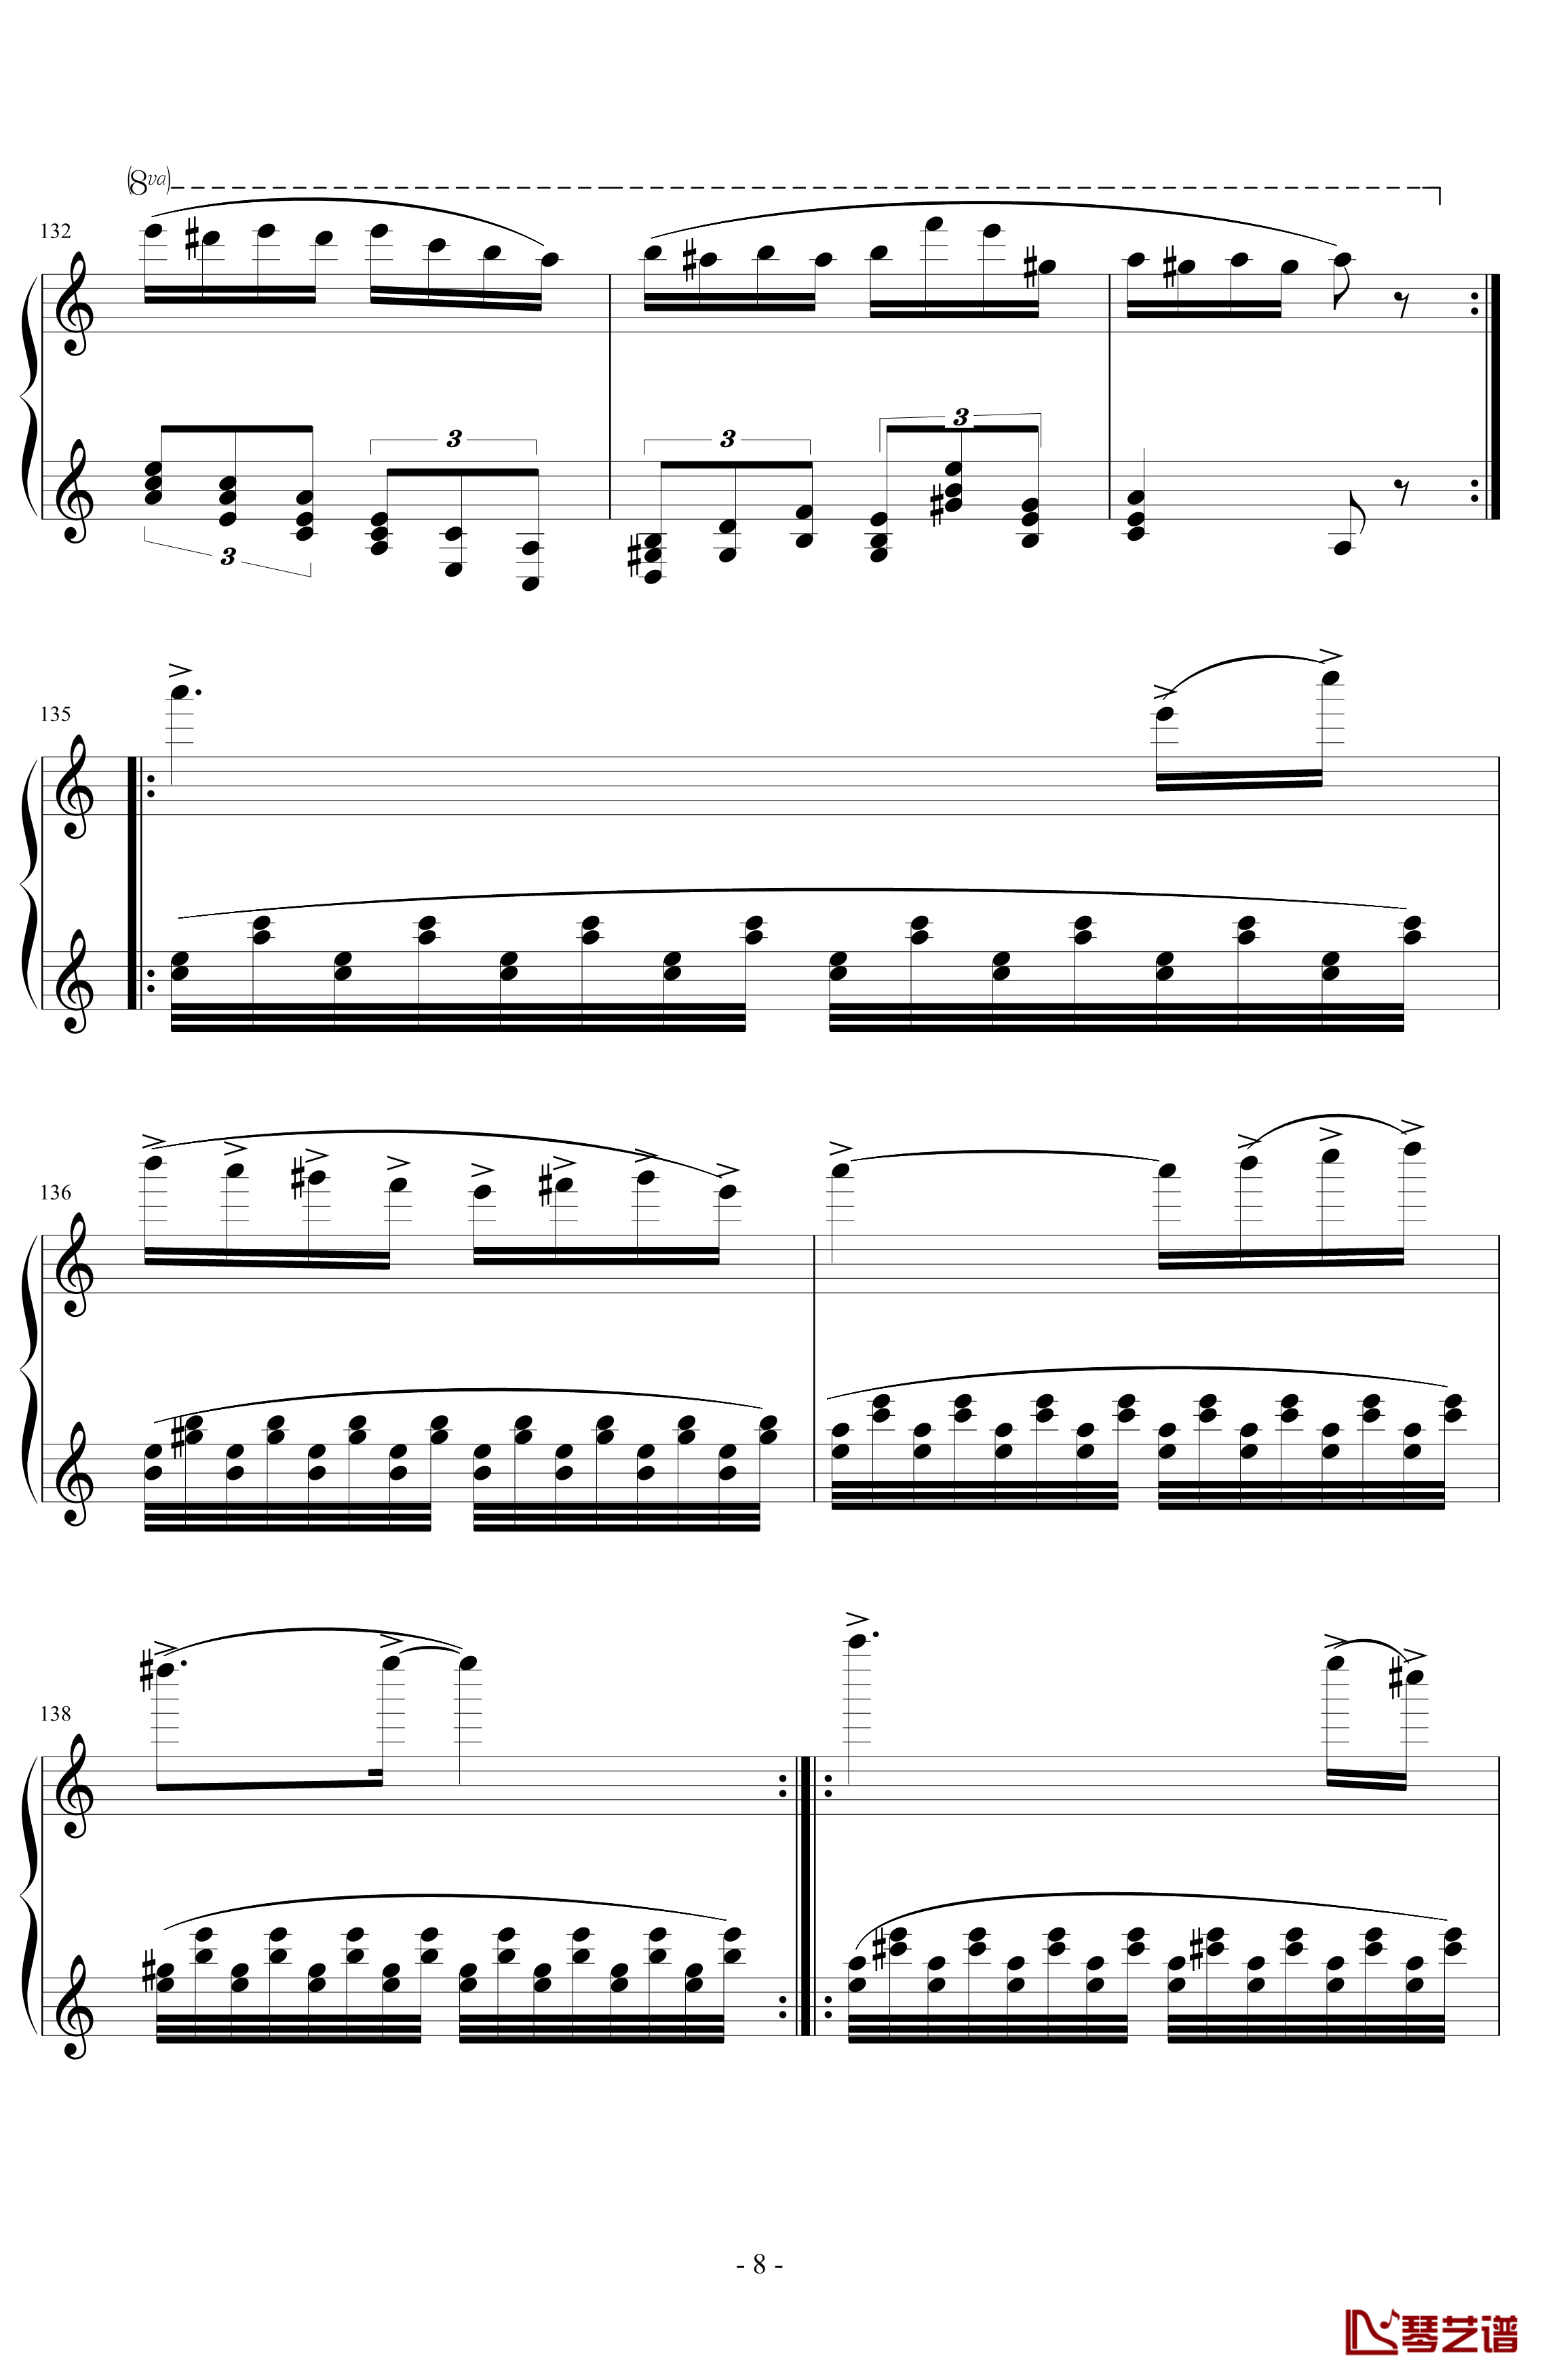 经典主题变奏曲钢琴谱-丁晓峰8